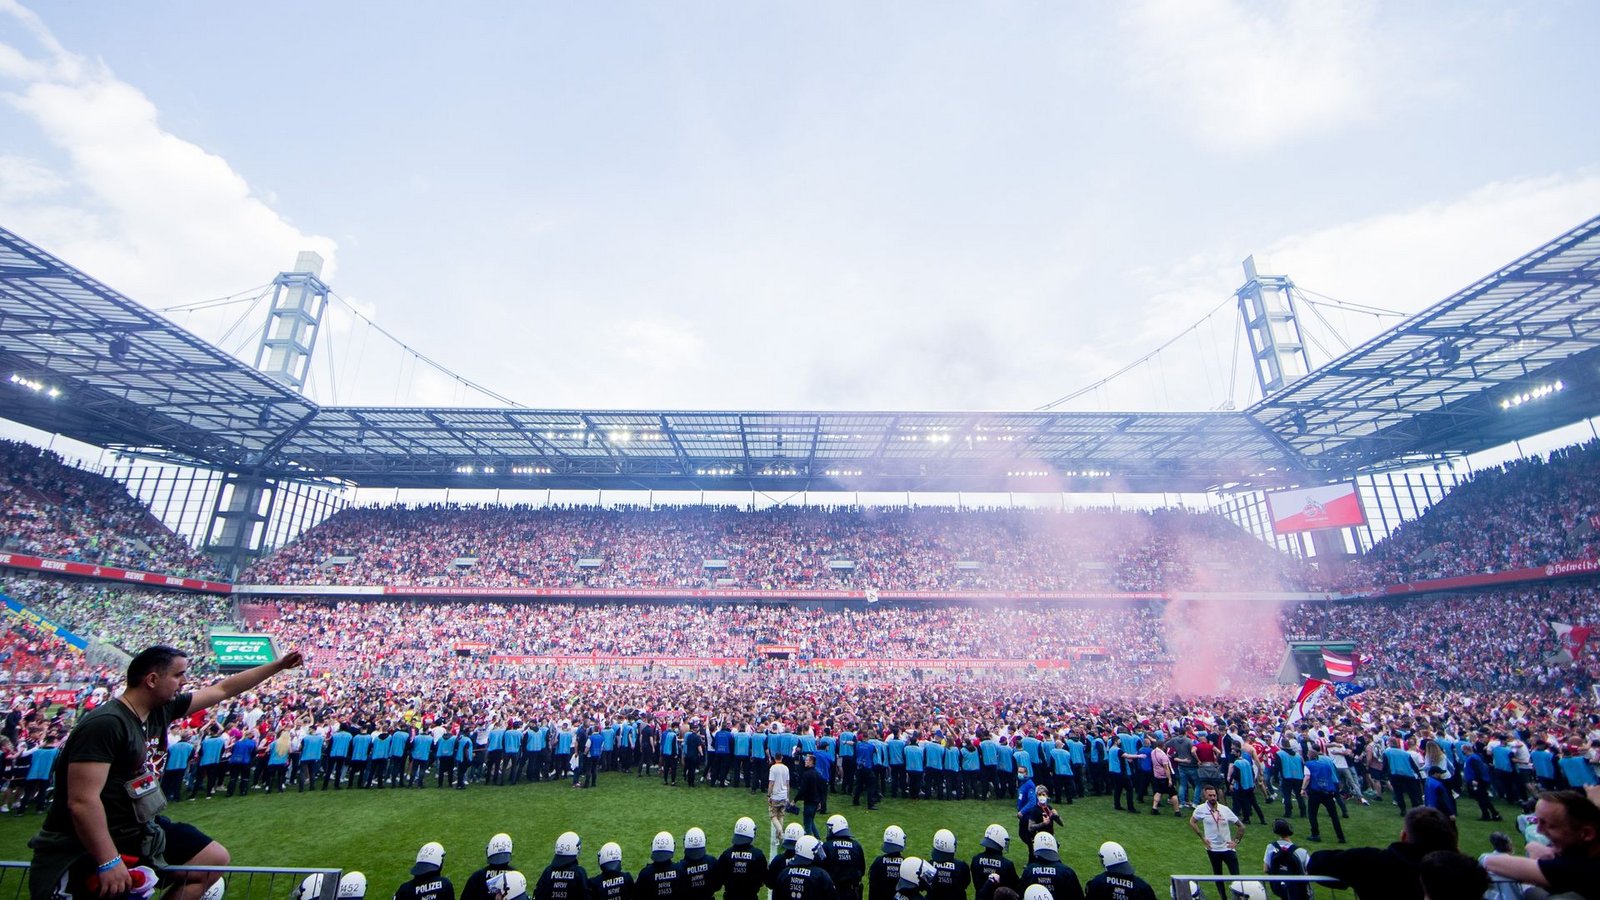 Nach der Qualifikation des 1. FC Köln für die Europa League stürmten die Fans den Platz im RheinEnergieStadion.Foto: Rolf Vennenbernd/dpa